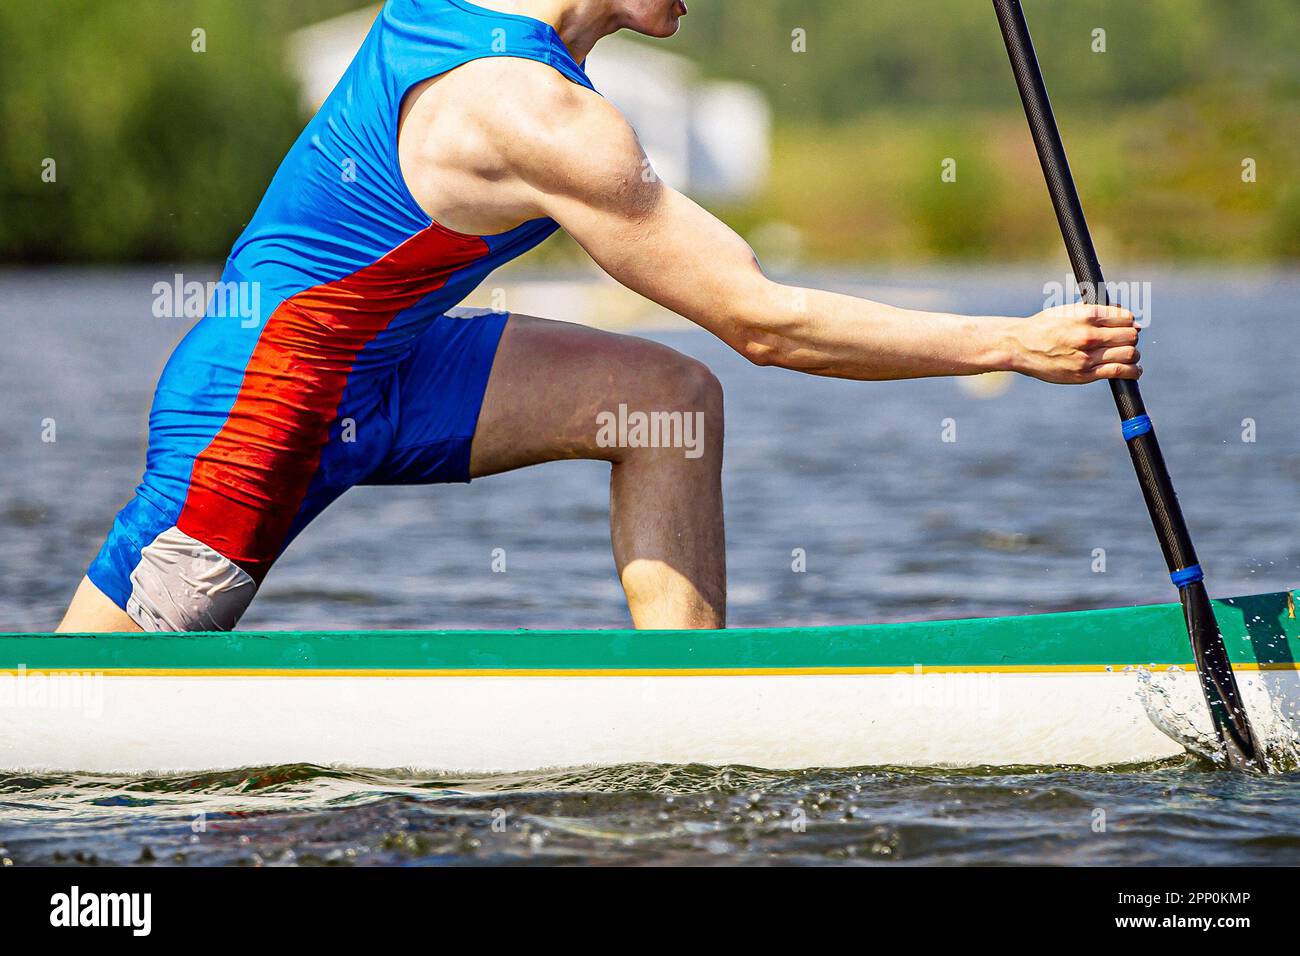 Nahaufnahme des Teilkörpersportlers Kanufahrer auf einem Kanu-Ruderrennen, Sommersportspiele Stockfoto